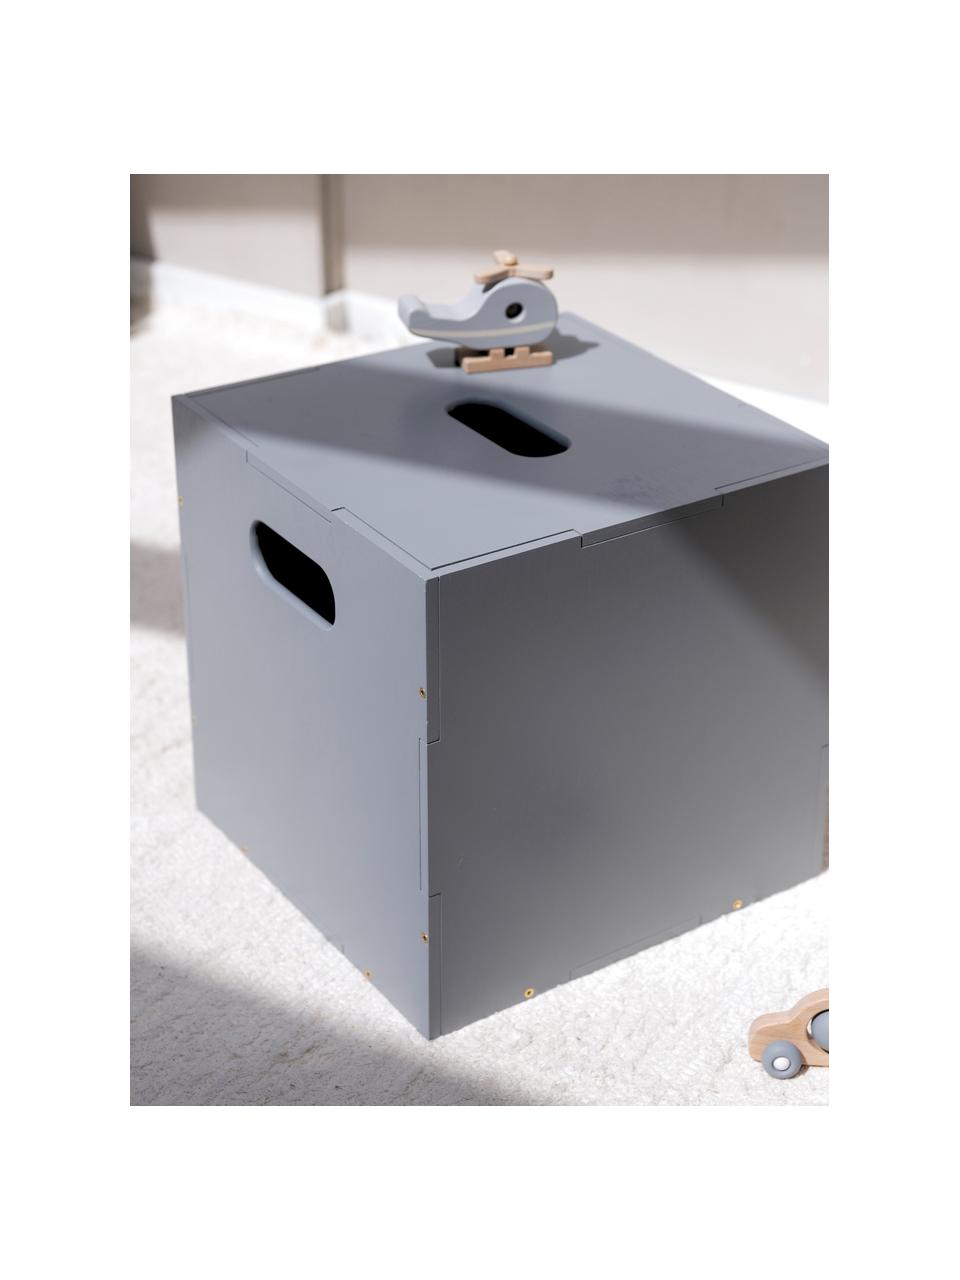 Holz-Aufbewahrungsbox Cube, Birkenholzfurnier, lackiert

Dieses Produkt wird aus nachhaltig gewonnenem, FSC®-zertifiziertem Holz gefertigt., Grau, B 36 x T 36 cm